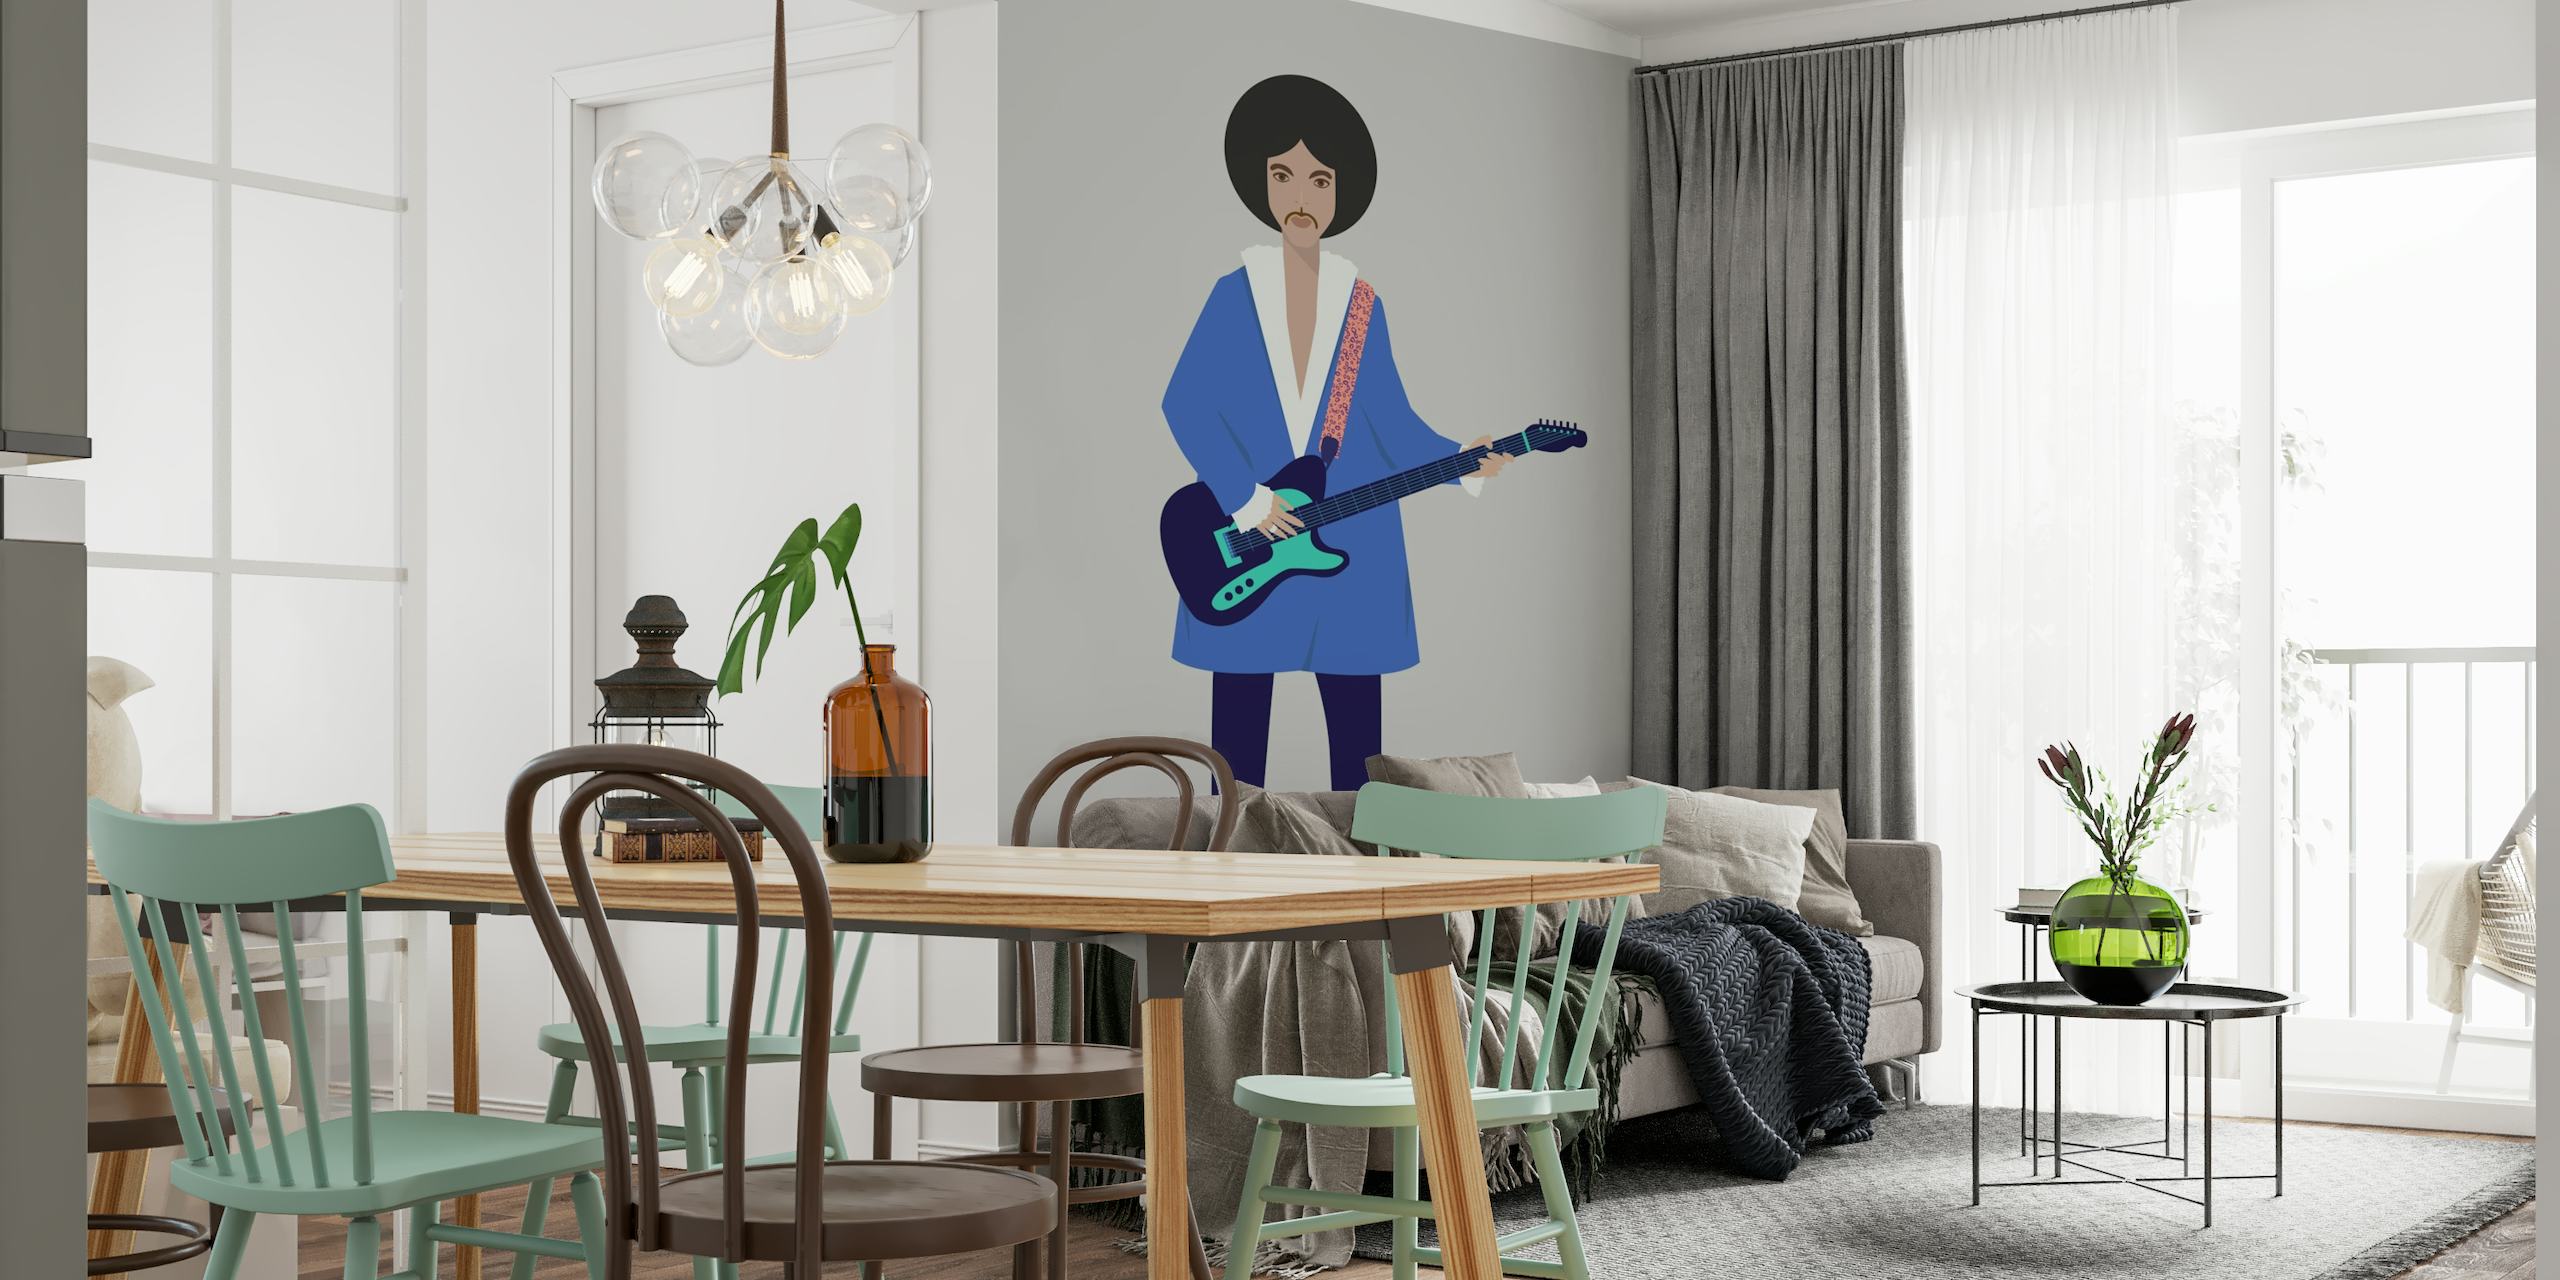 Mural ilustrativo de una persona con una guitarra, con un diseño artístico moderno.